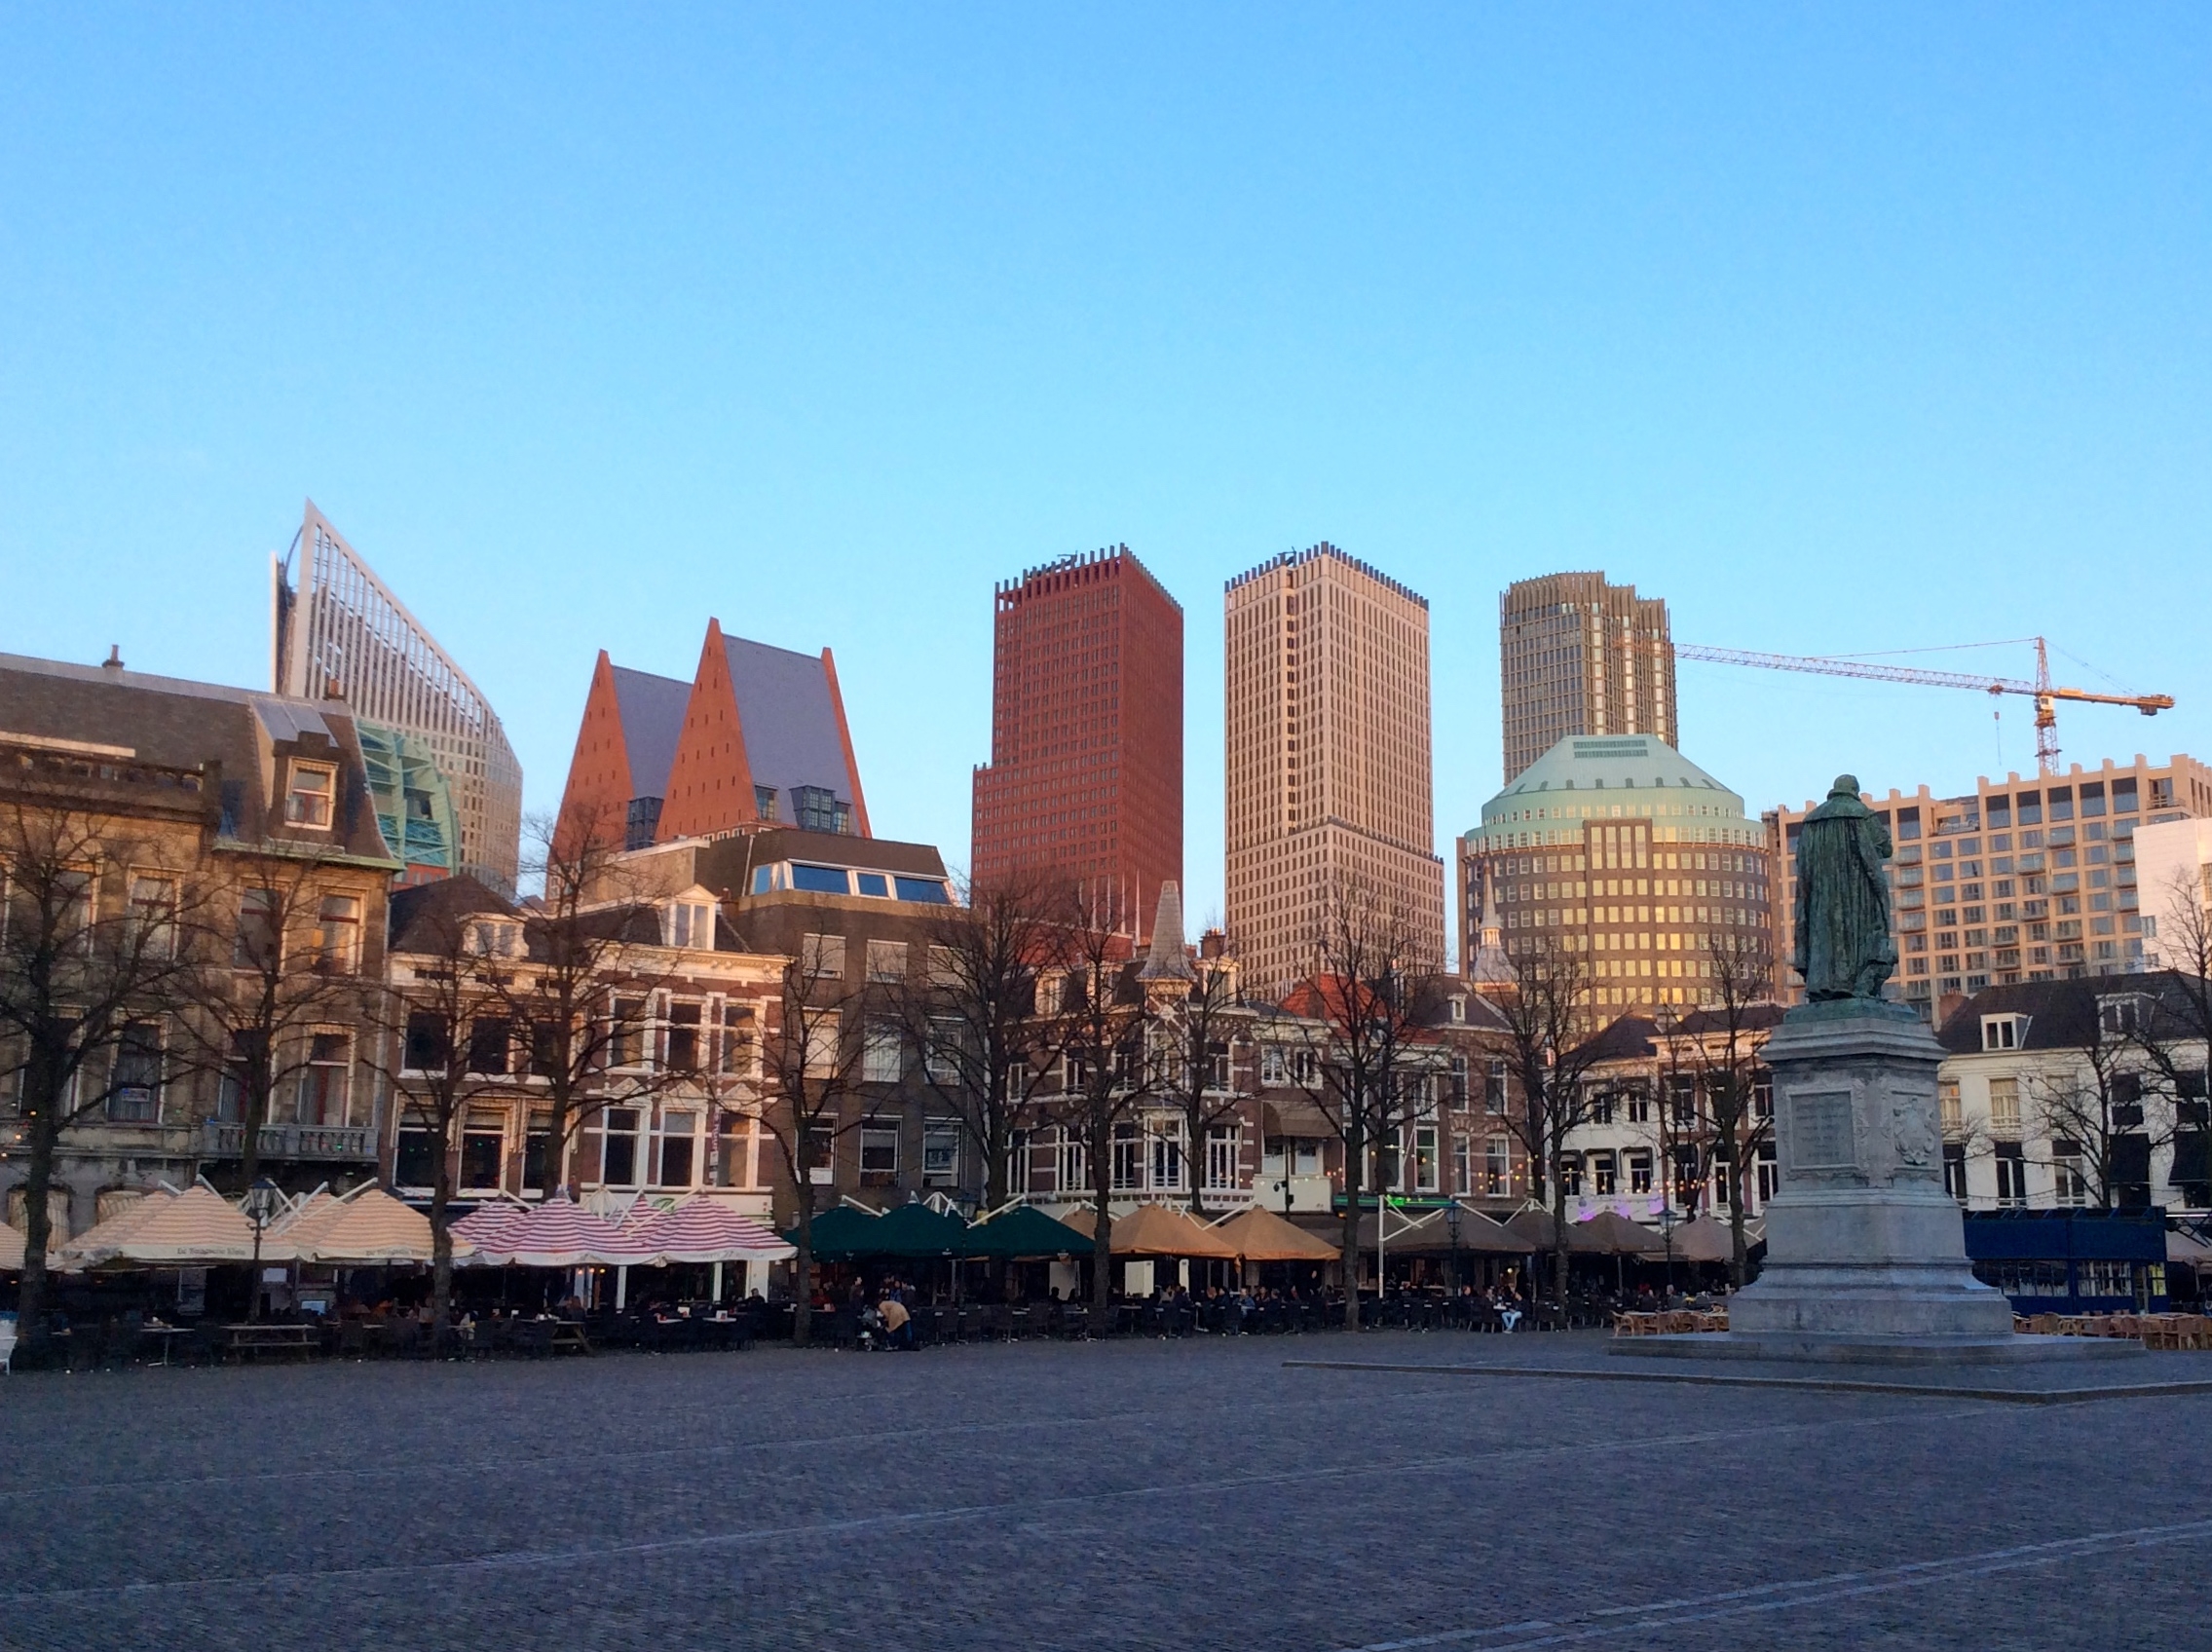 De skyline van Den Haag met een plein op de voorgrond